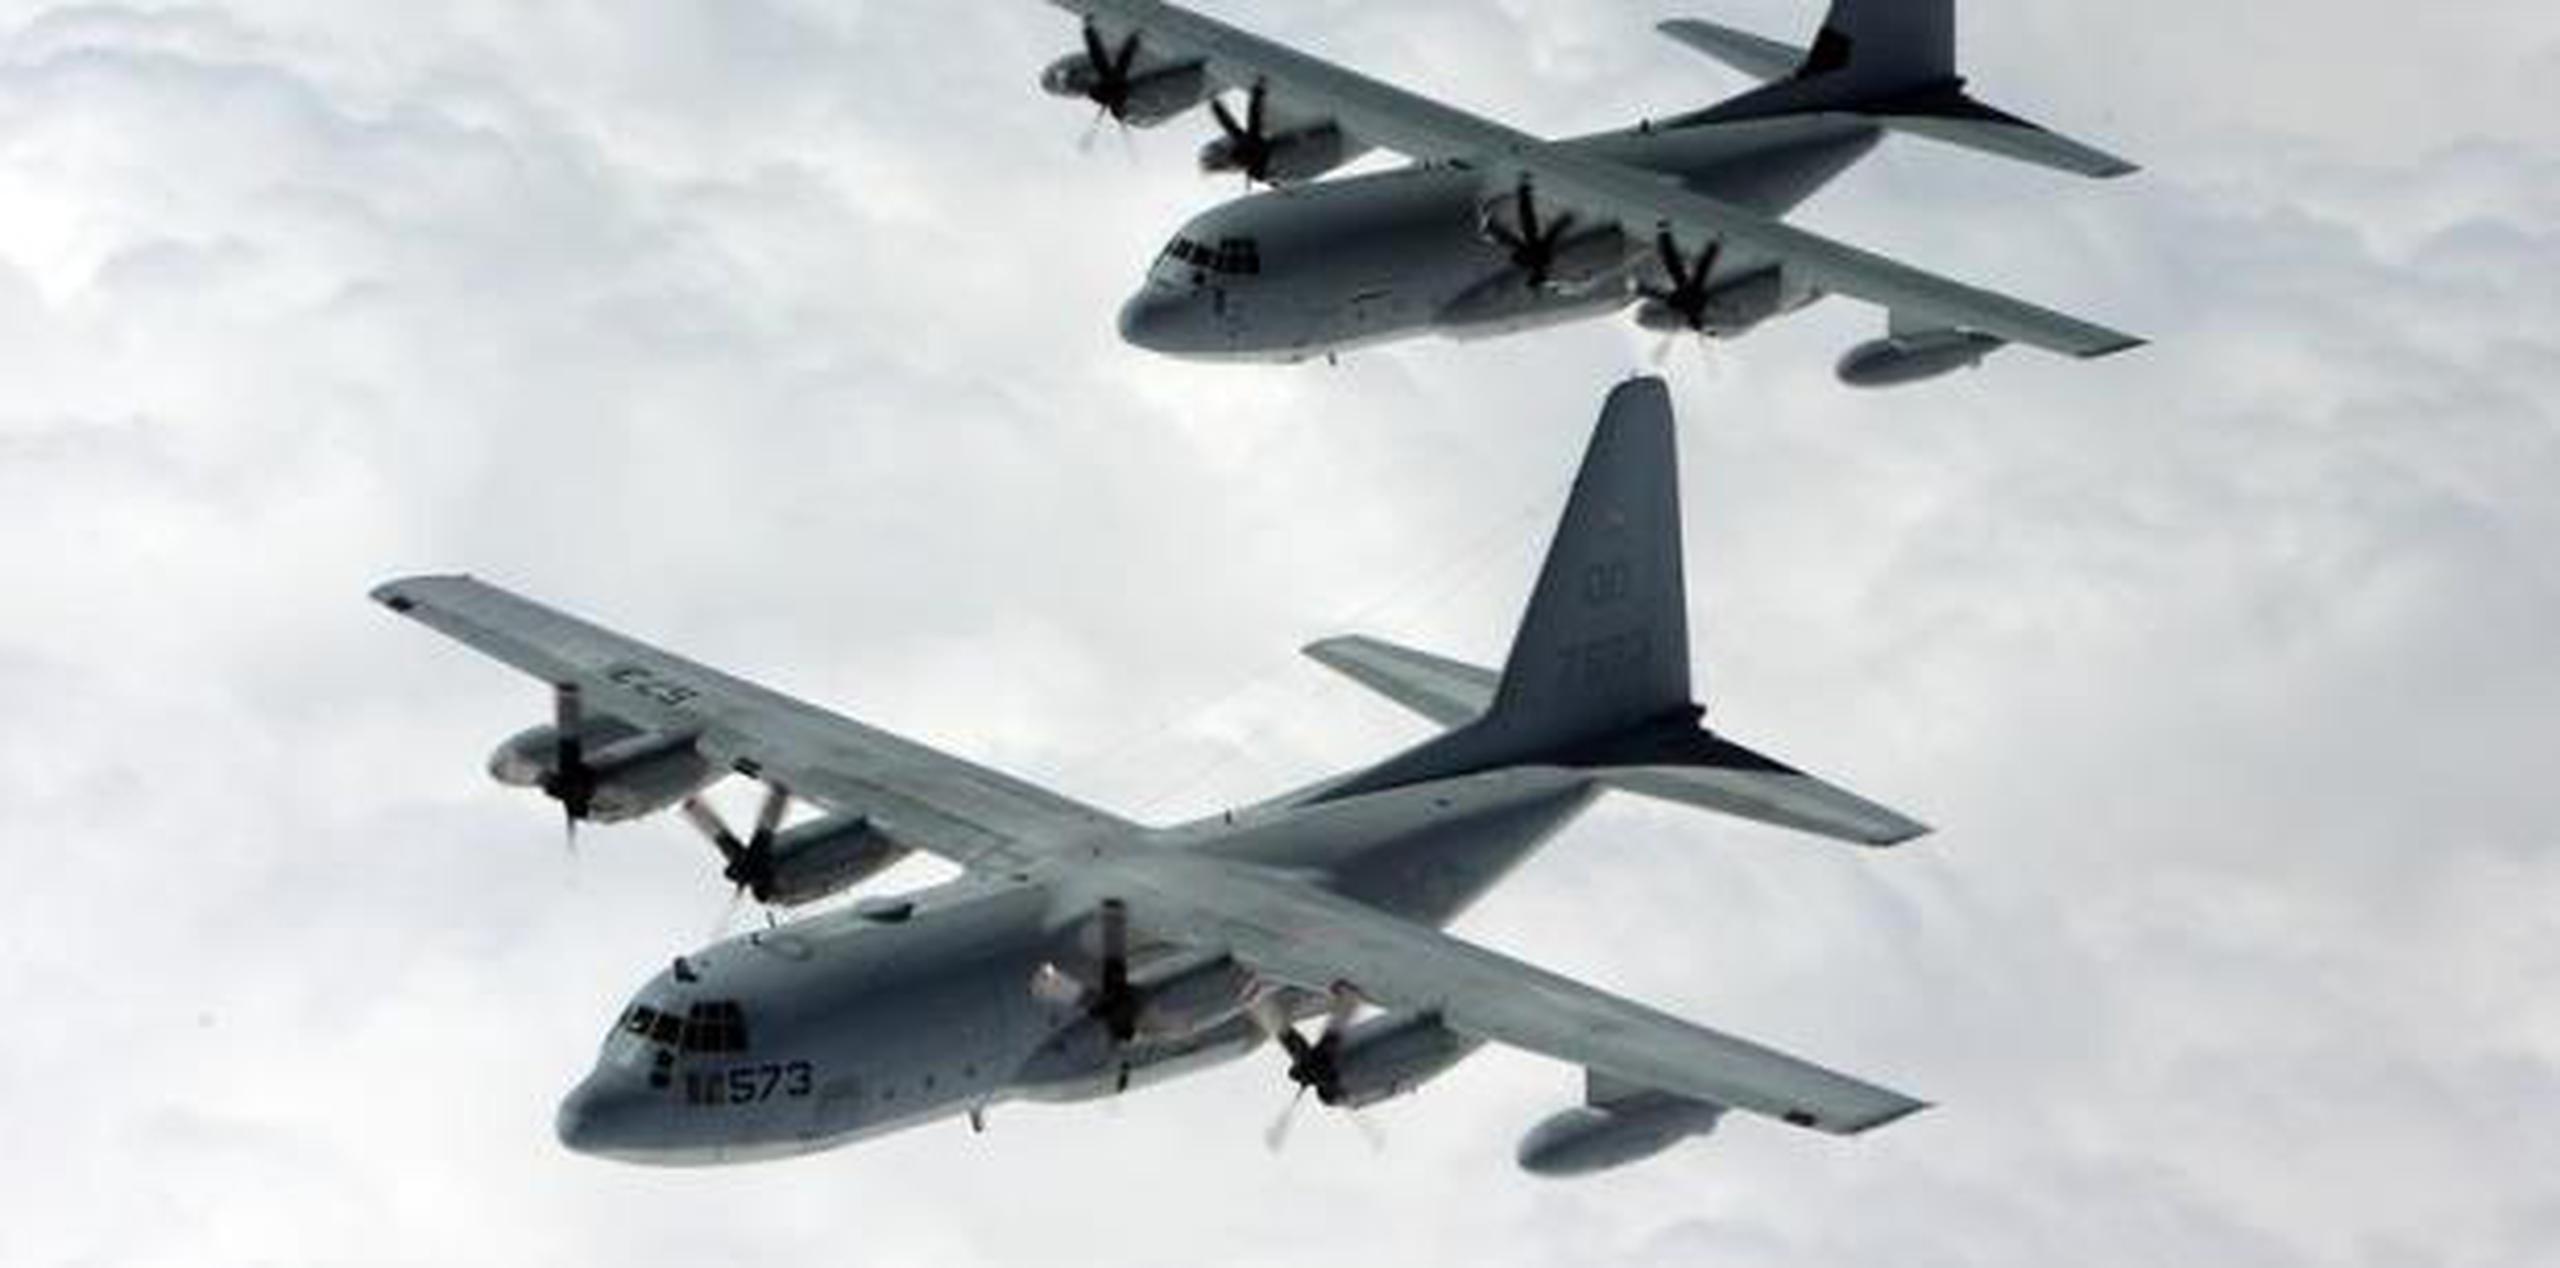 Los cinco fallecidos iban a bordo de un Hercules KC-130. (U.S. Navy / U.S. Department of Defense)